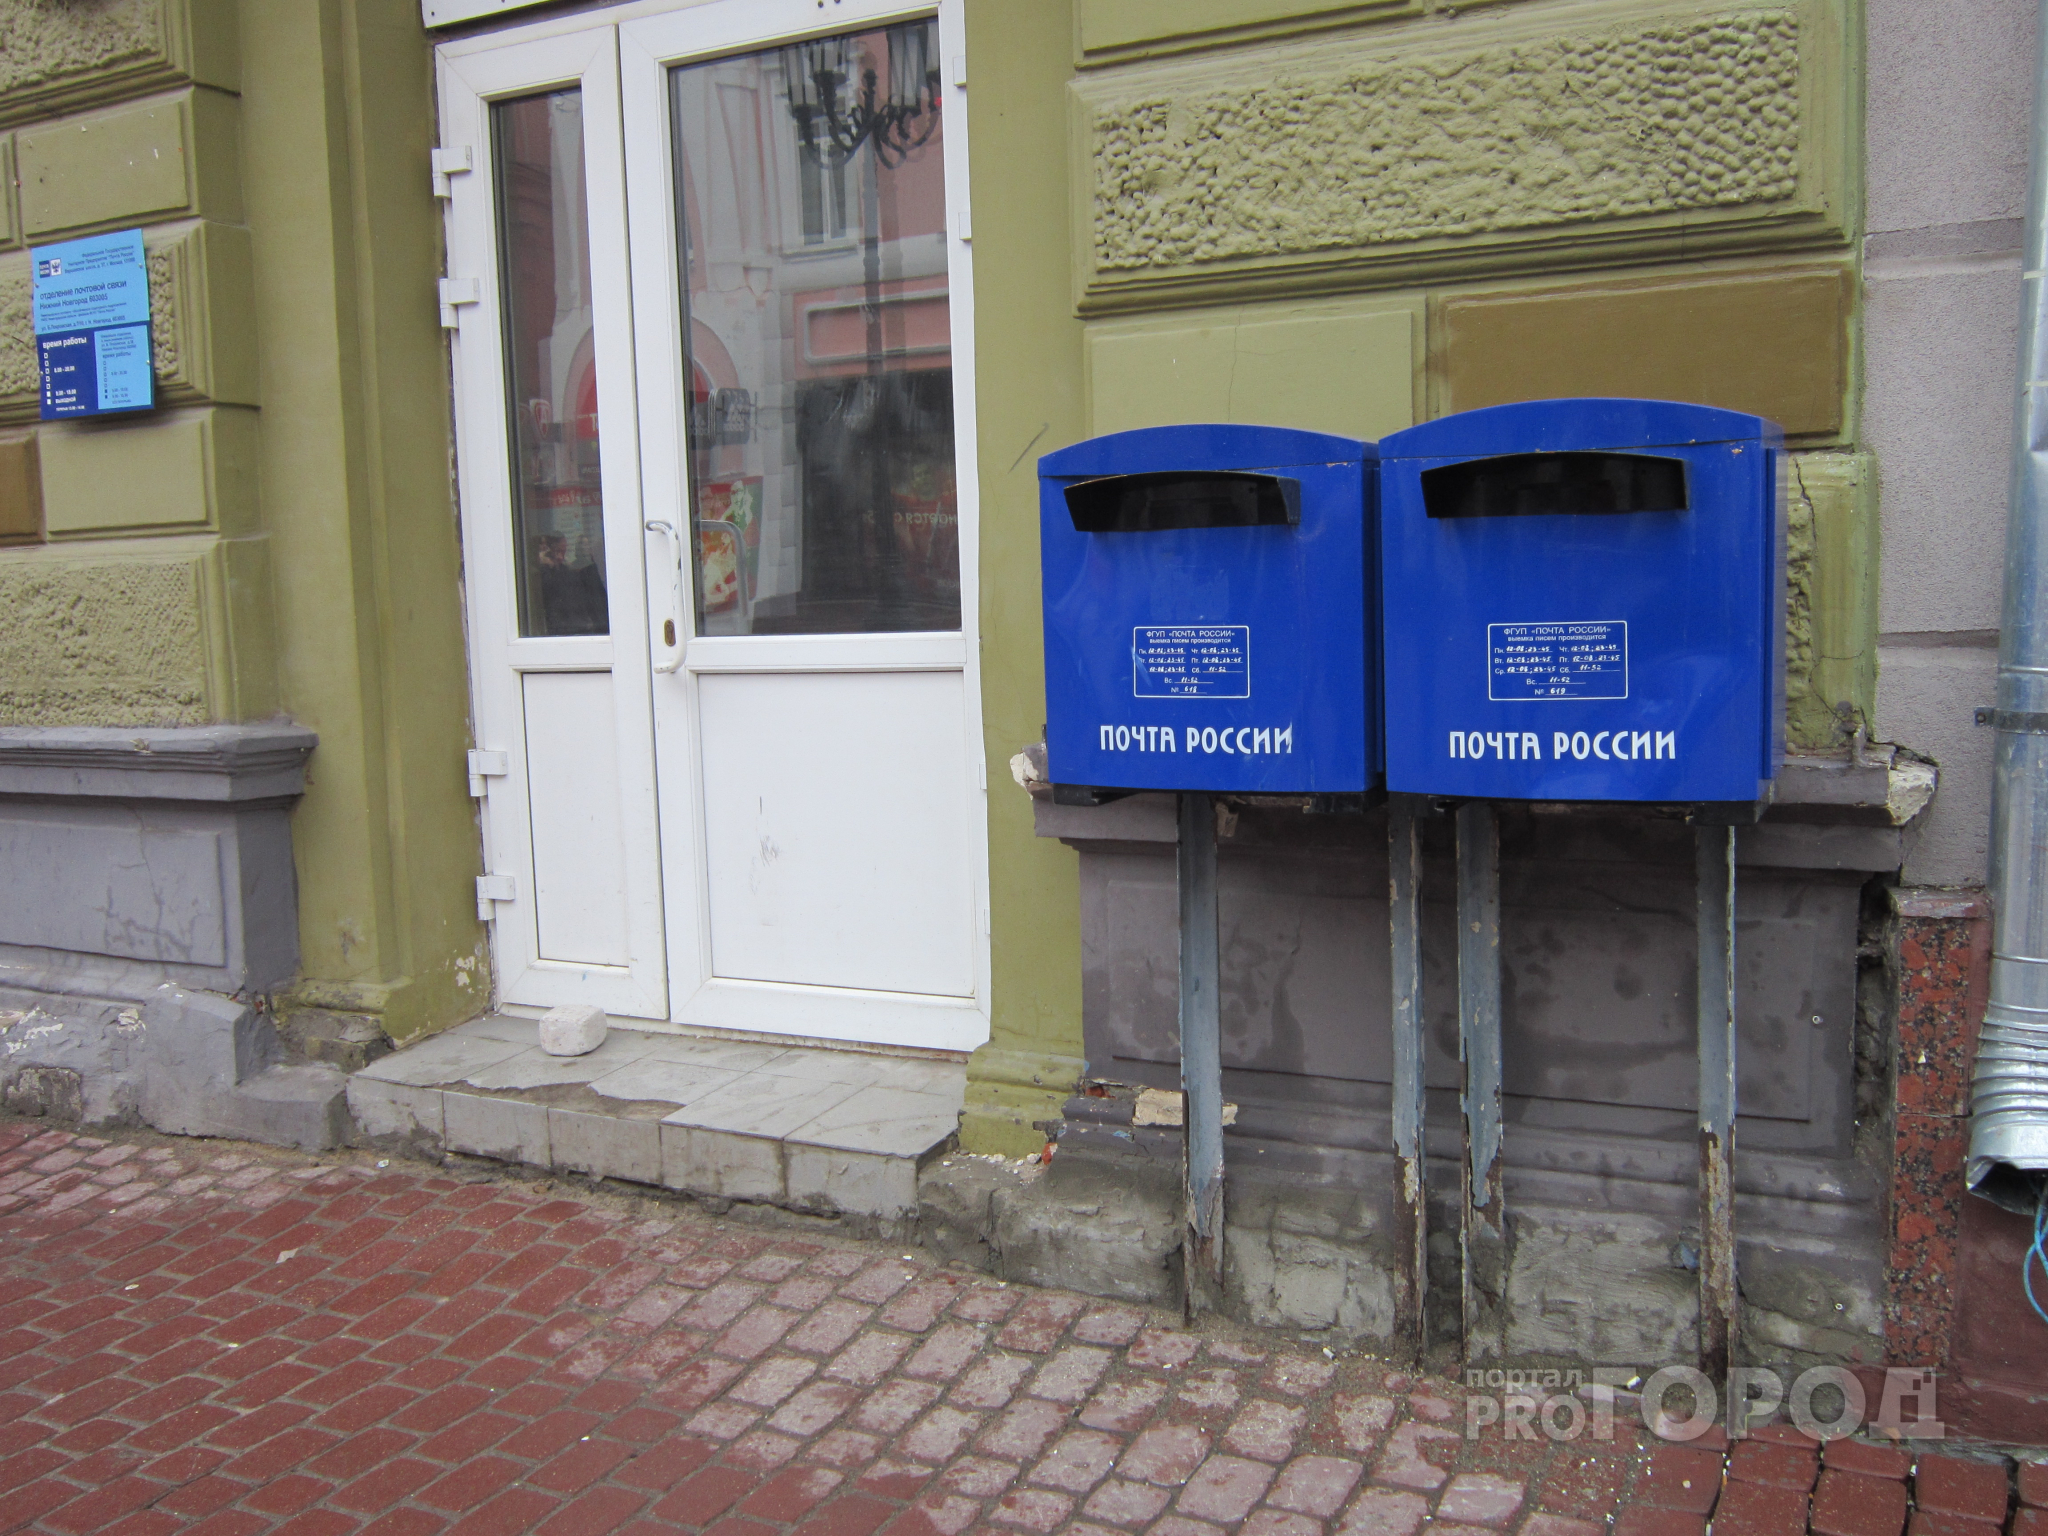 Нижегородских почтальонов заставляли навязывать товары получателям писем